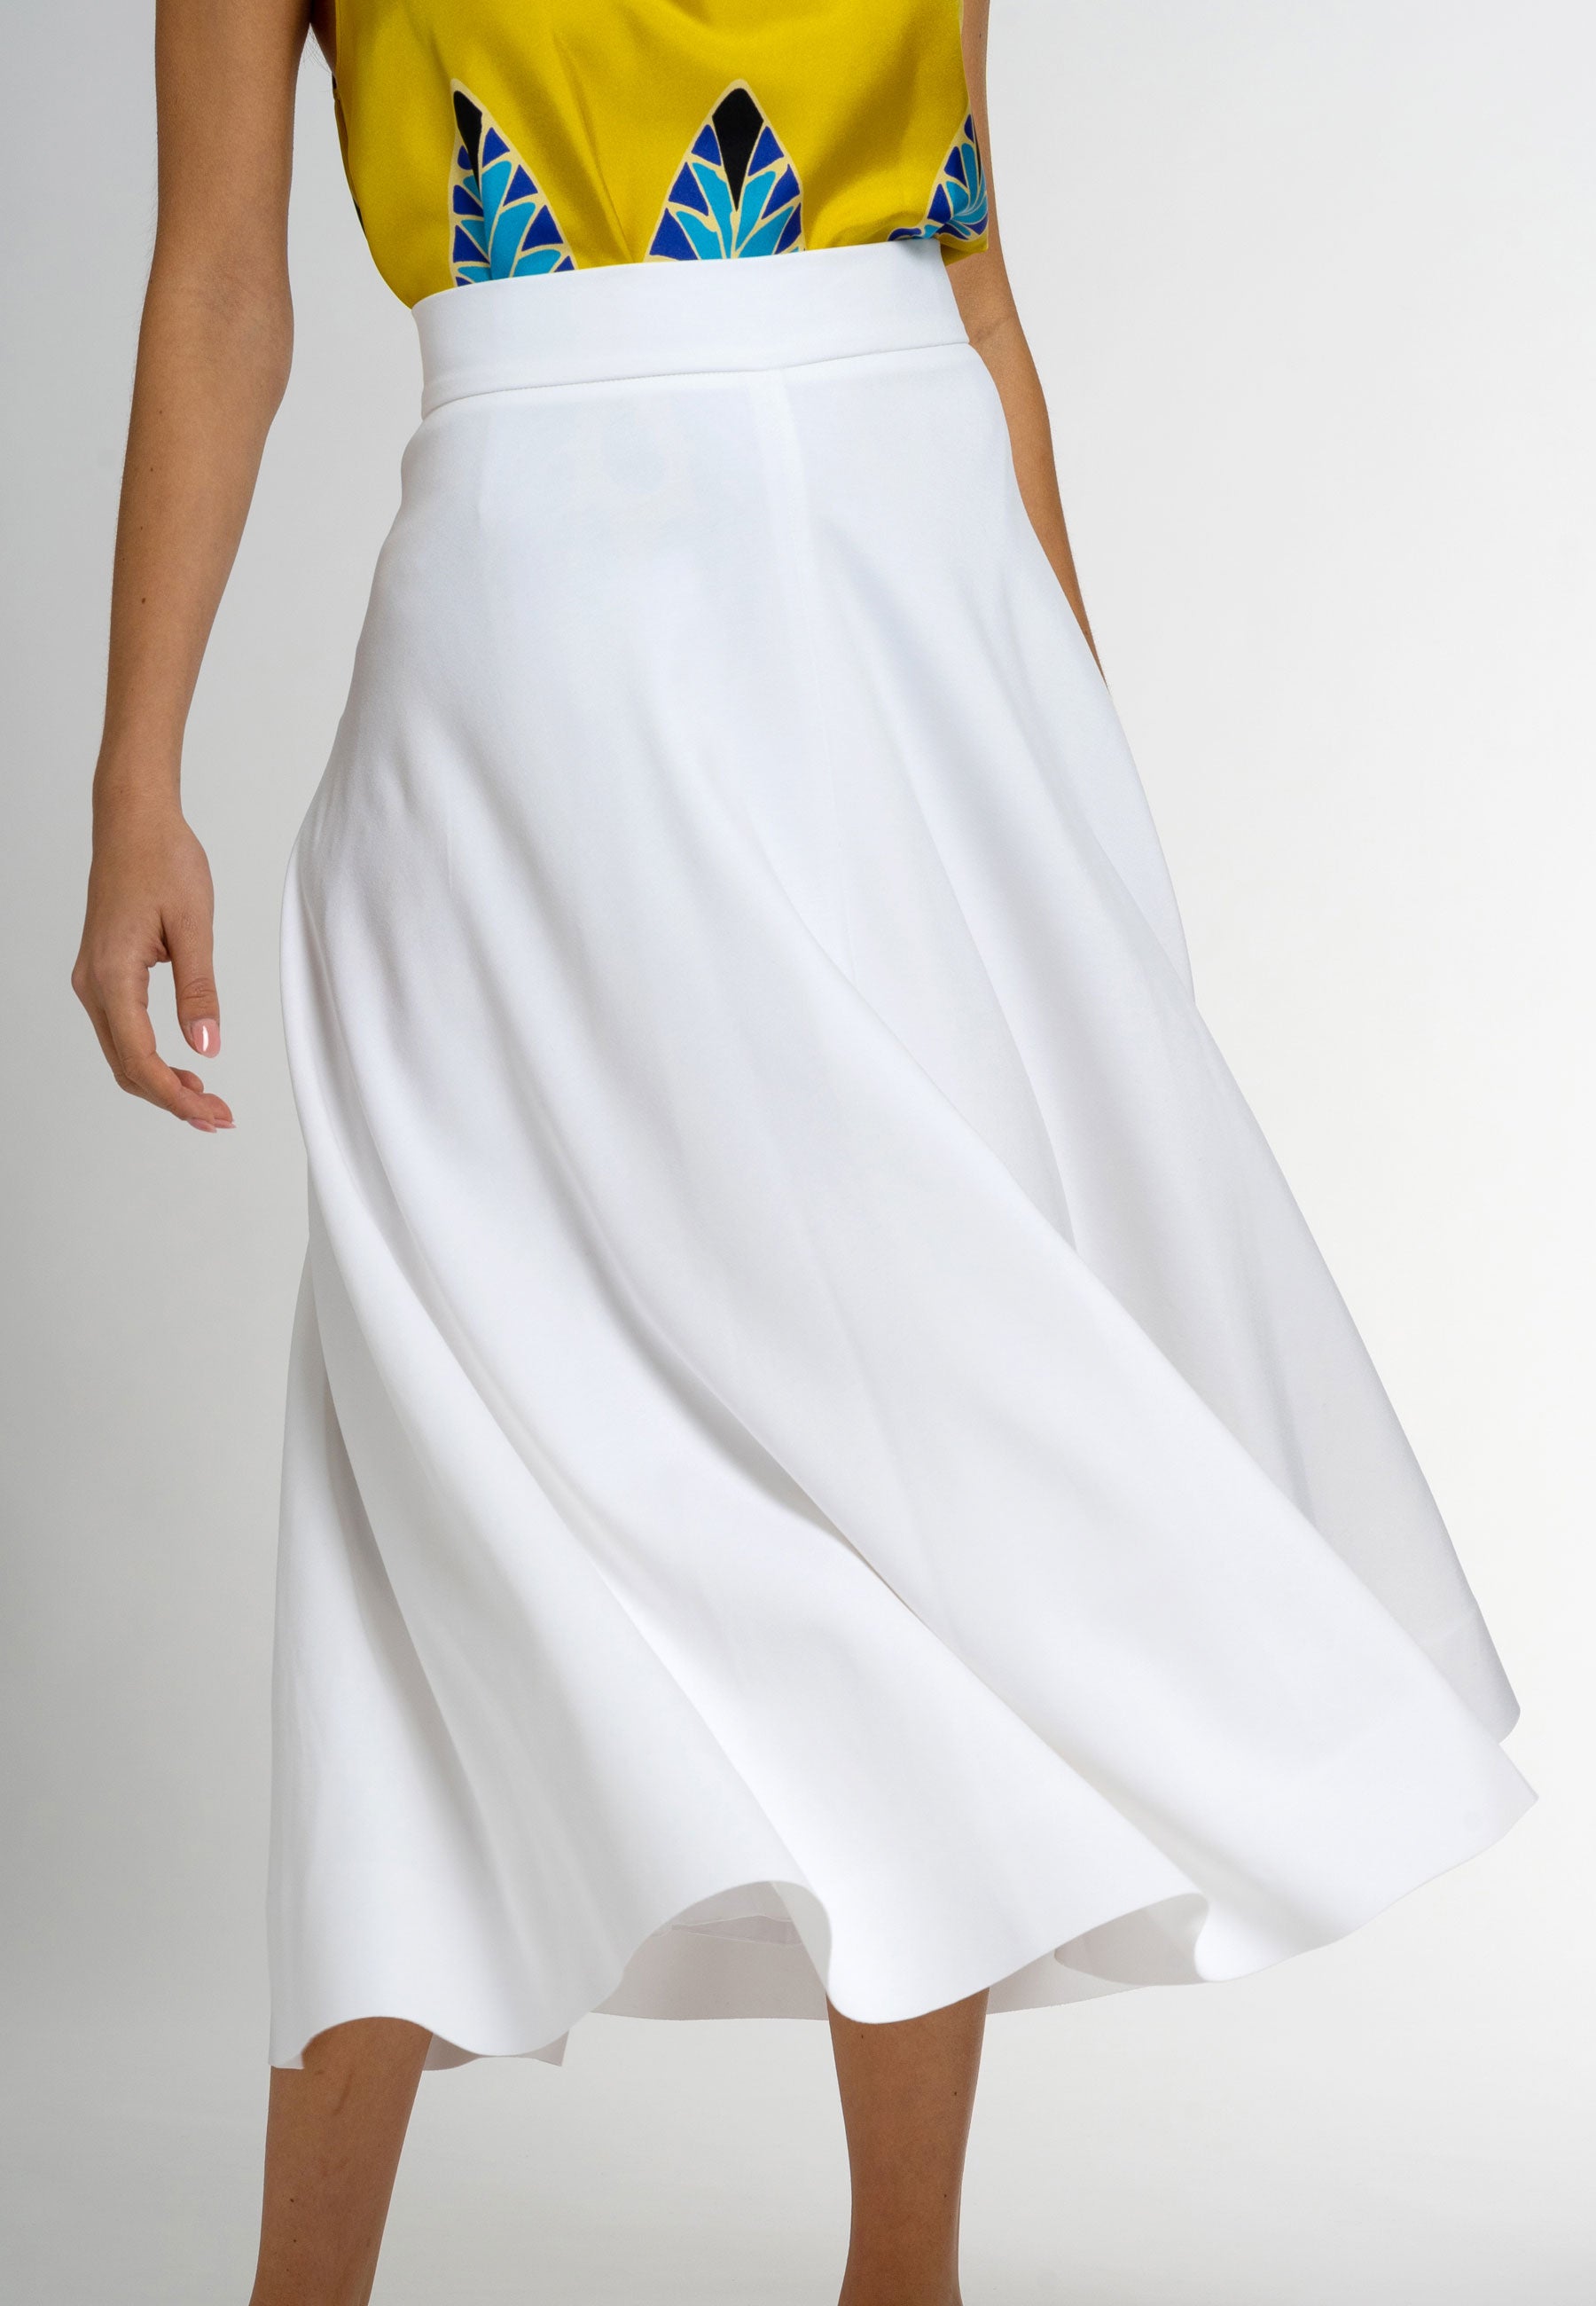 white midi skirt; maxi skirts, maxi skirt, maxi, skirt, a-line skirts, a-line skirt, maxi dress,  long skirts, long skirt, midi white skirt,  white knit midi skirt